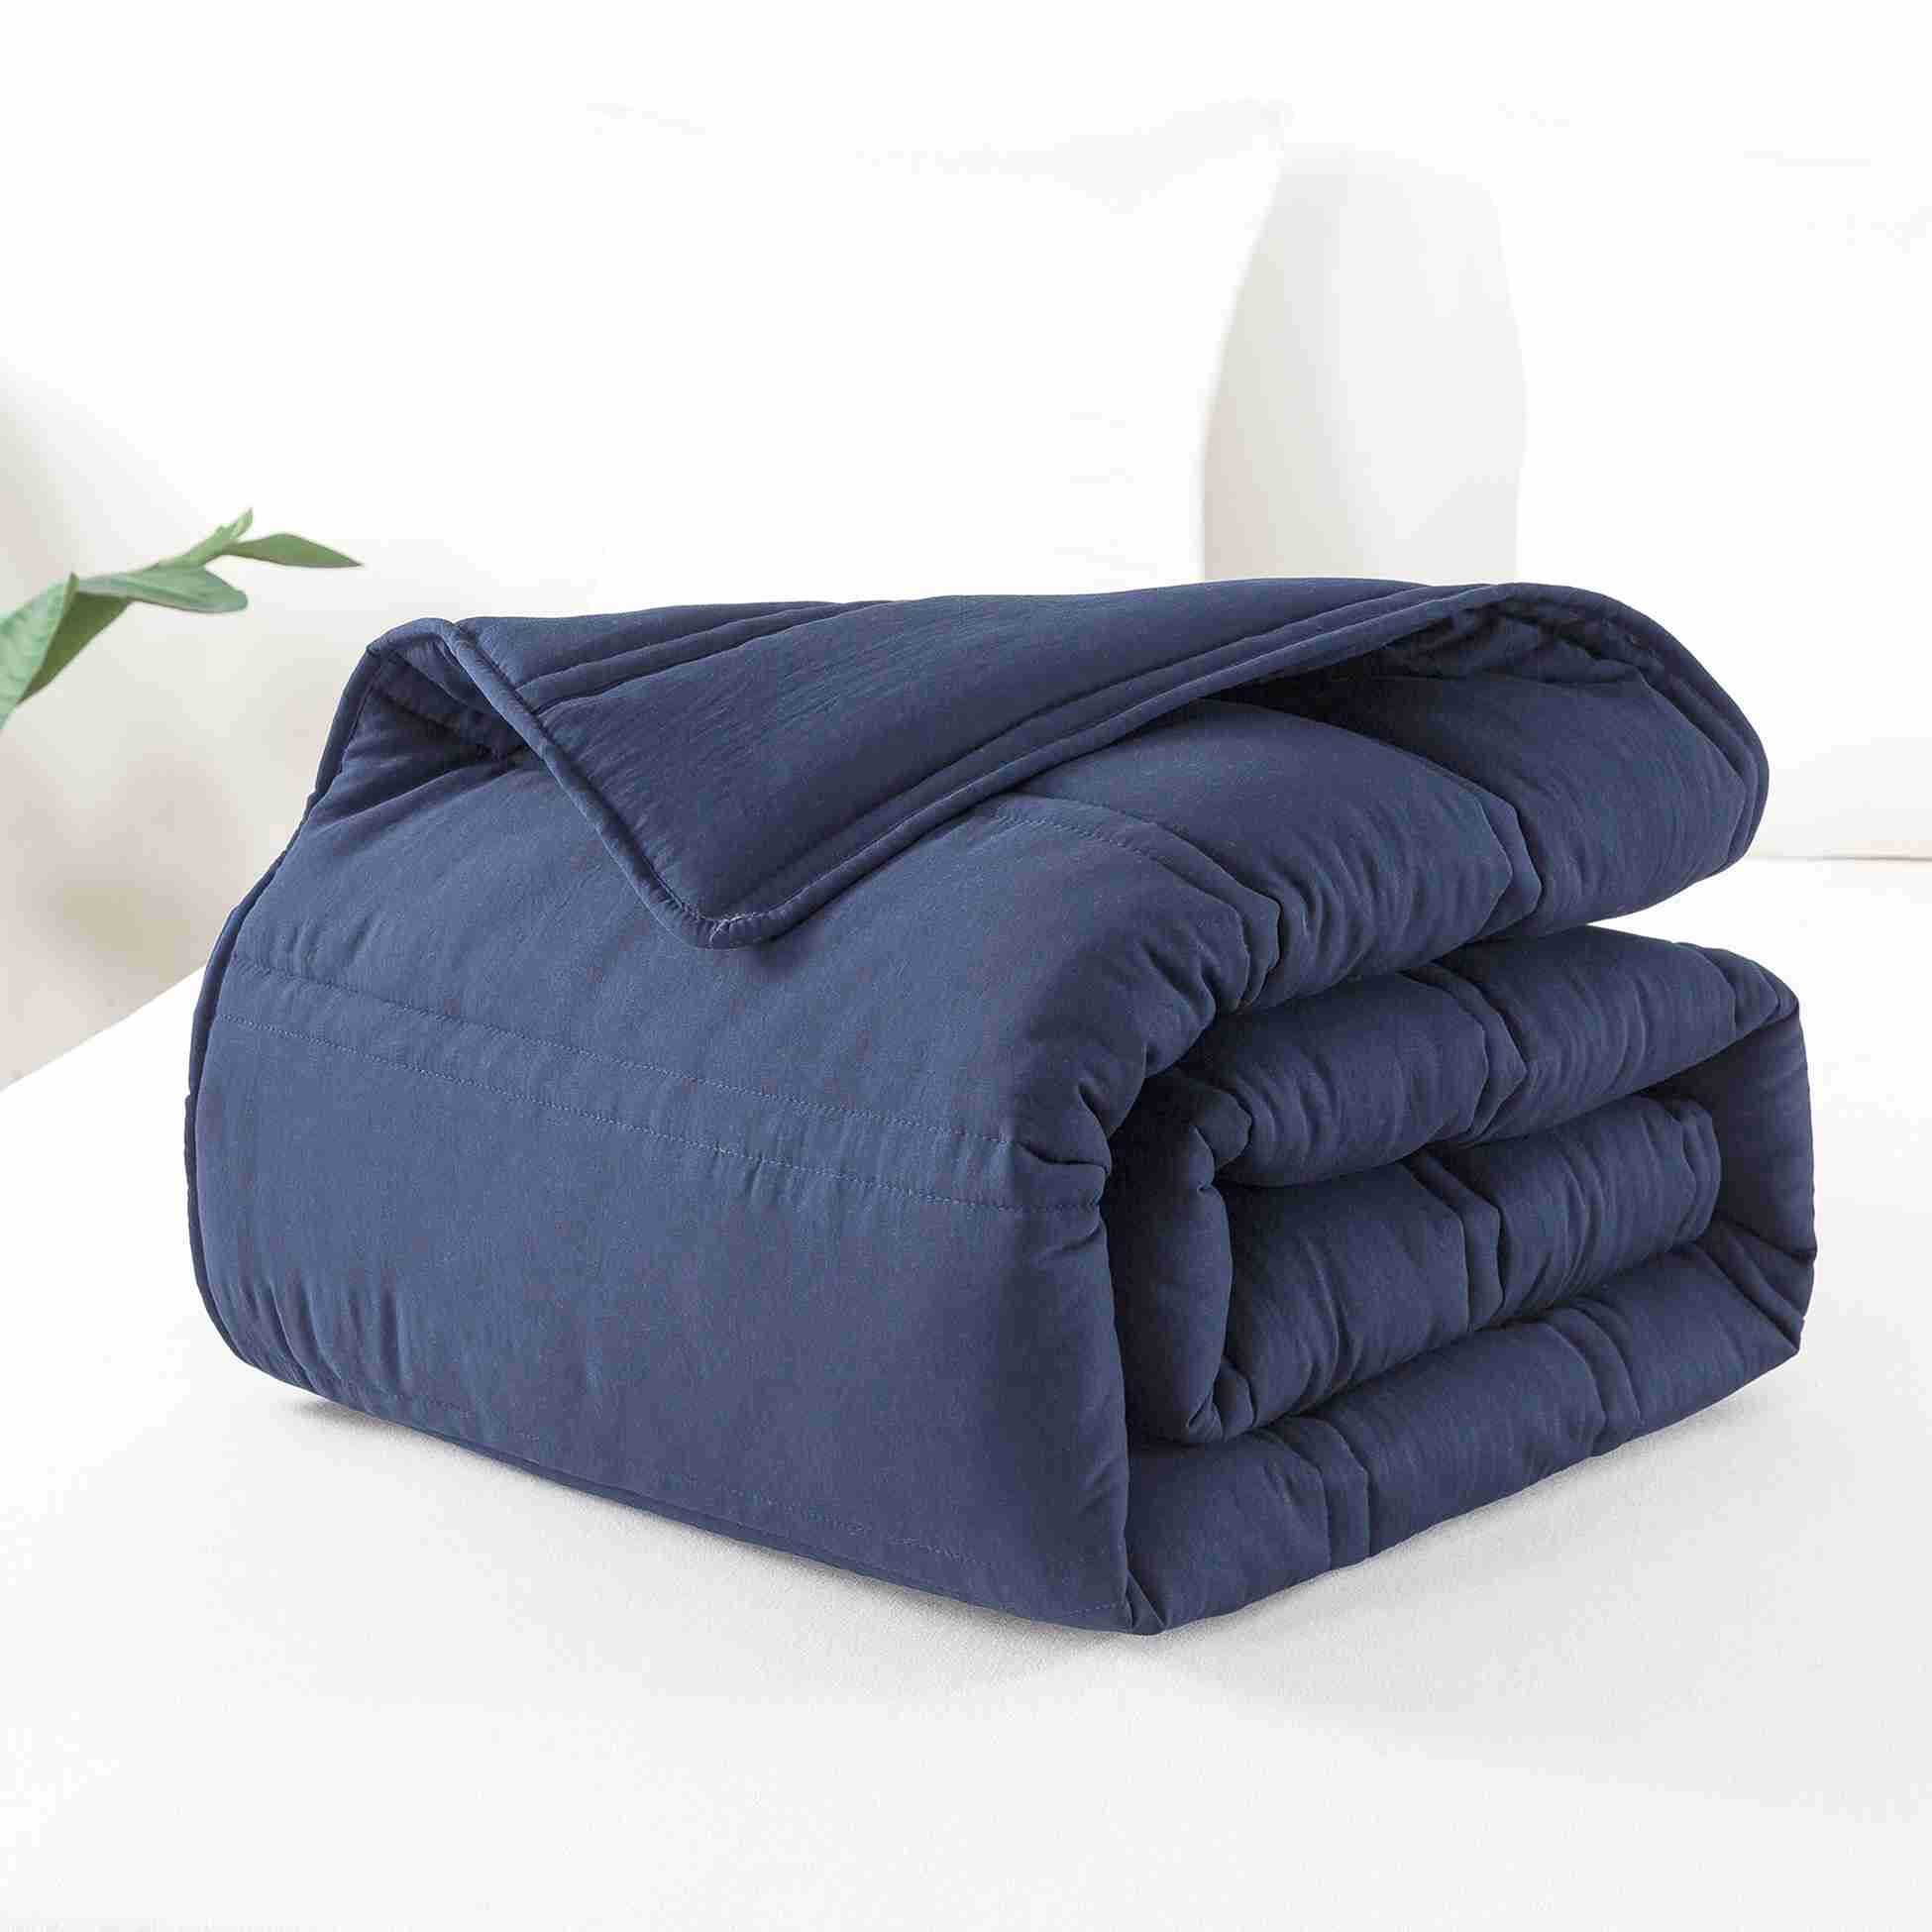 comforter-set-queen-size with discount code